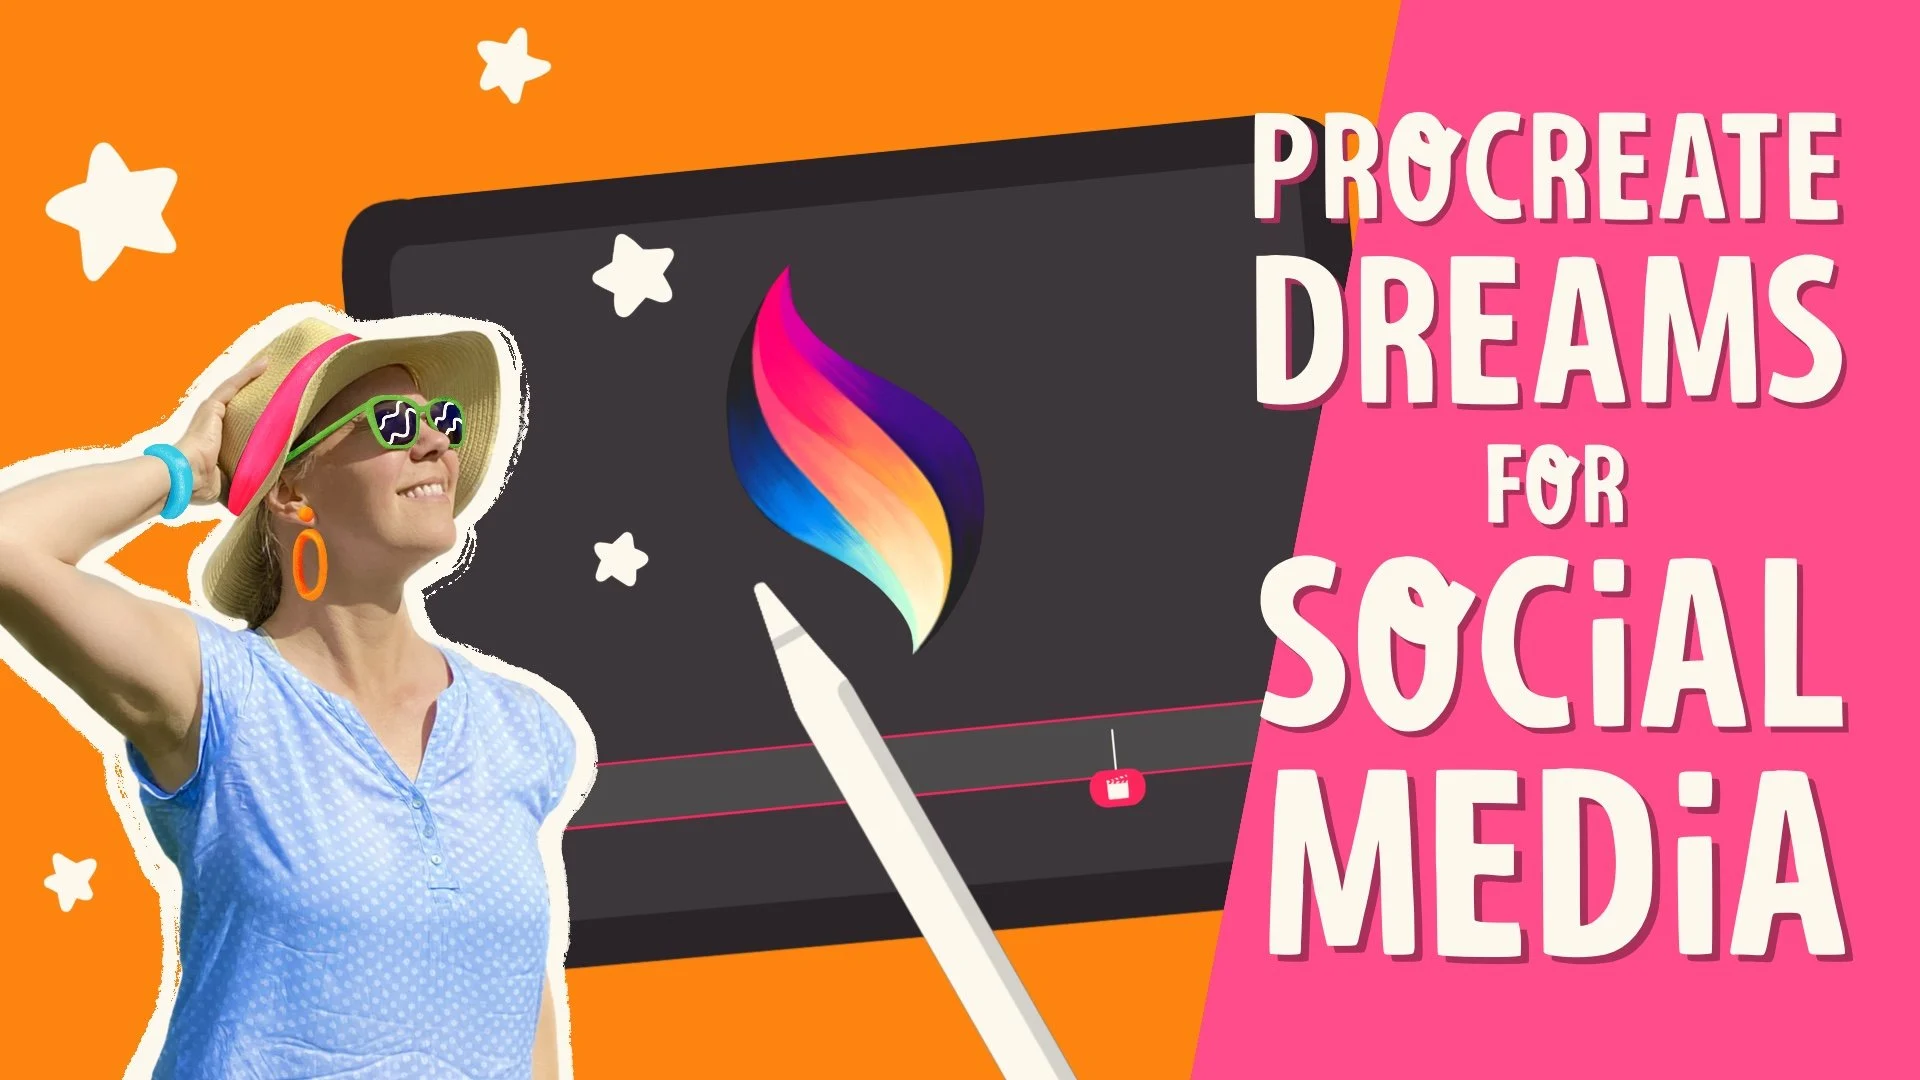 آموزش رویاها را تولید کنید - محتوای رسانه های اجتماعی خود را با انیمیشن های ساده بالا ببرید